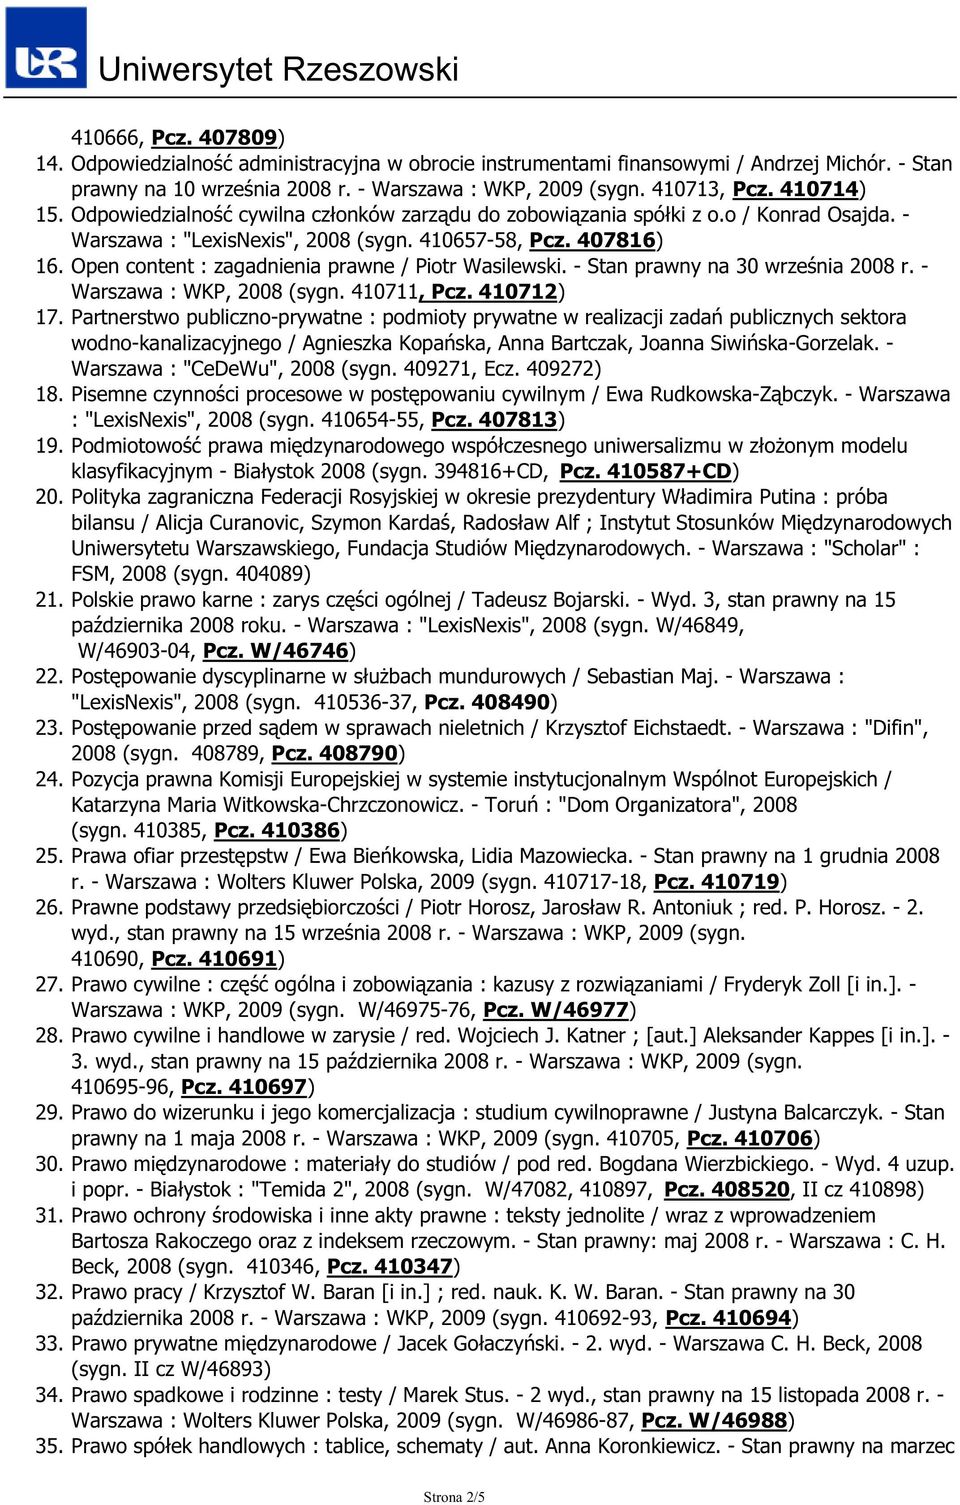 Open content : zagadnienia prawne / Piotr Wasilewski. - Stan prawny na 30 września 2008 r. - Warszawa : WKP, 2008 (sygn. 410711, Pcz. 410712) 17.